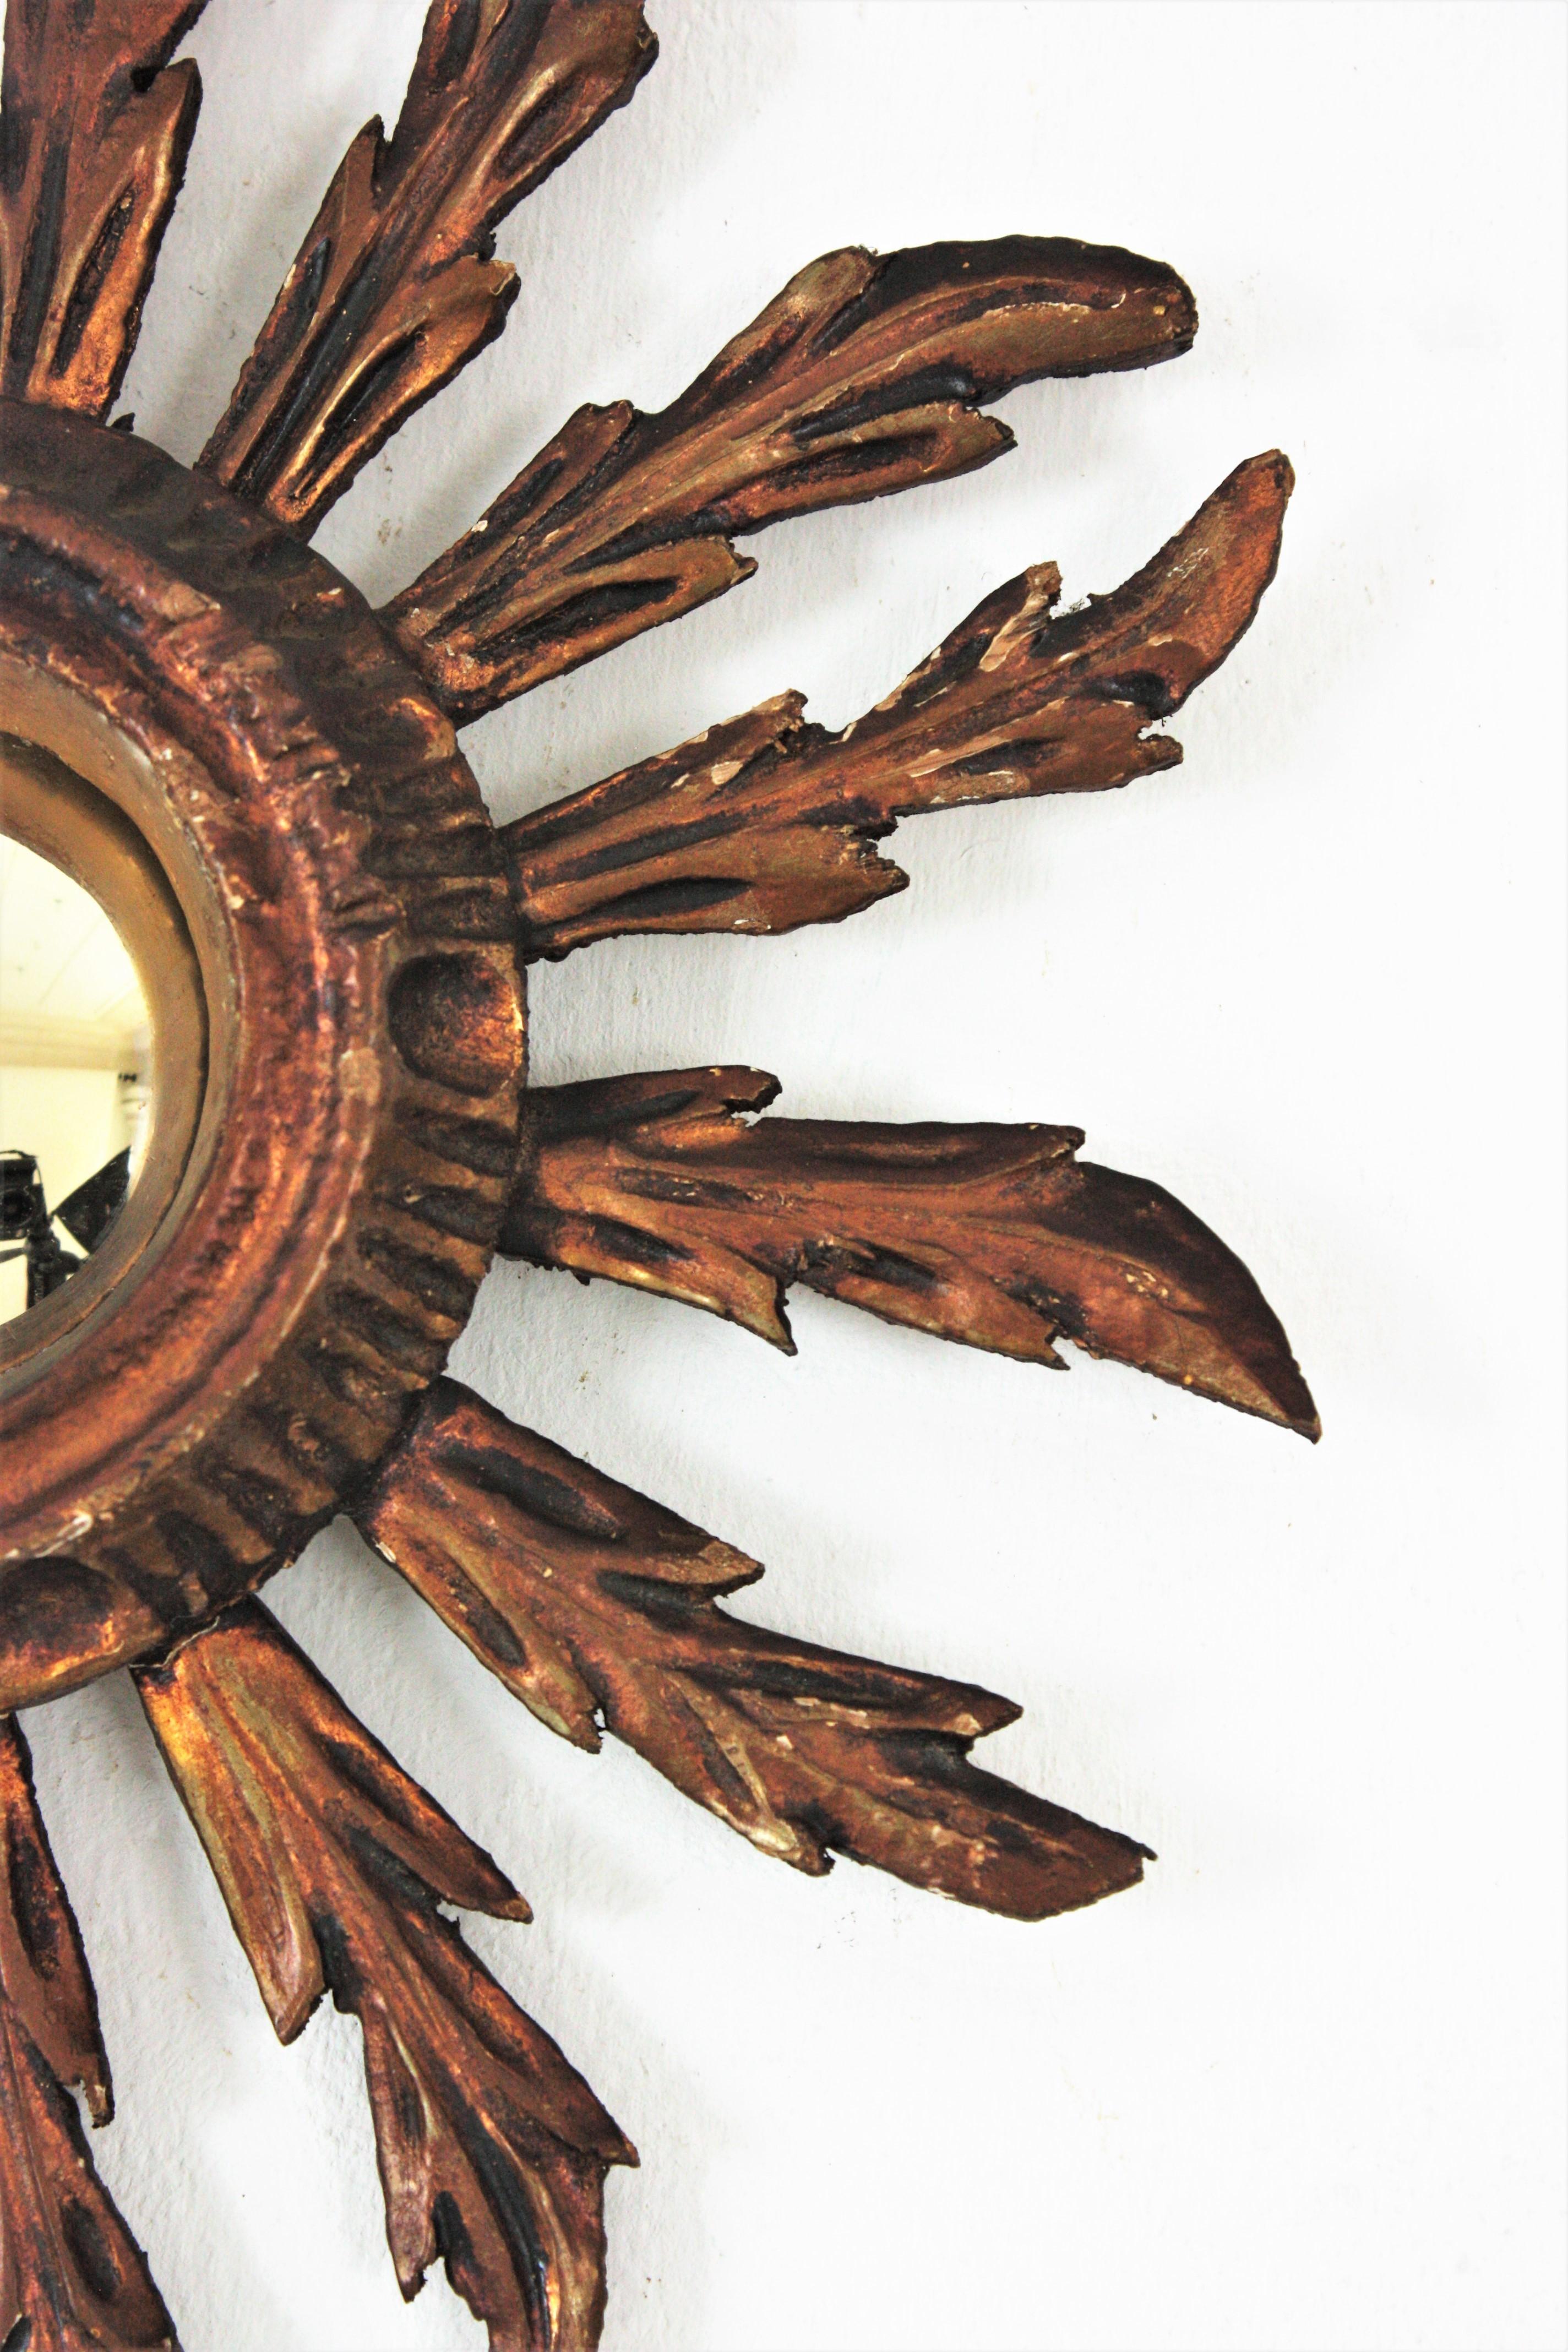 Sunburst Convex Mirror in Small Scale, Baroque Style For Sale 1